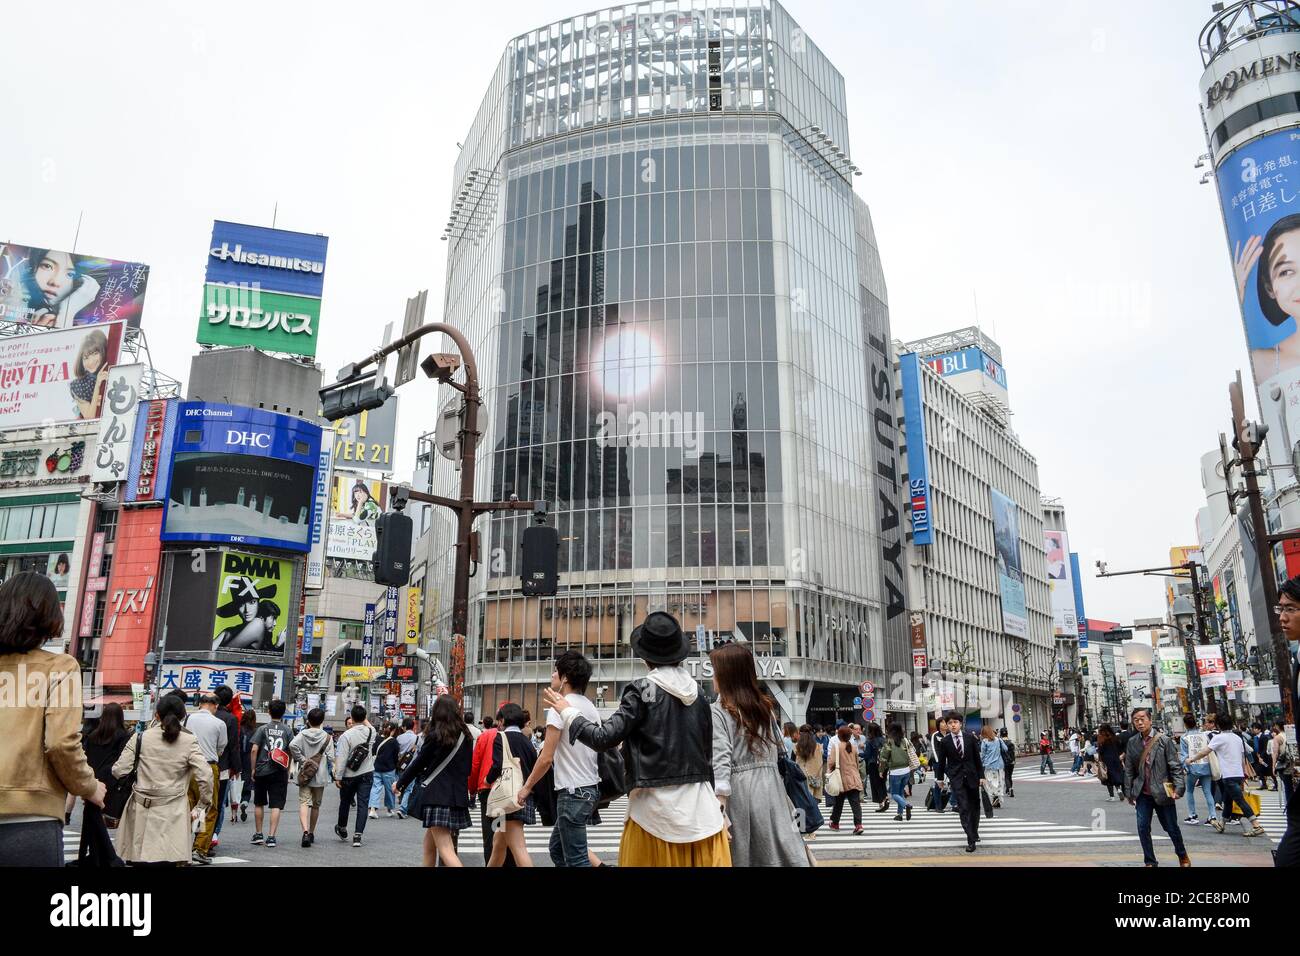 Shibuya, Tokyo, Japan - Shibuya Scramble Crossing. Viele Menschen in einem der belebtesten Gegenden der Welt. Überfüllt und voller Werbetafeln. Stockfoto